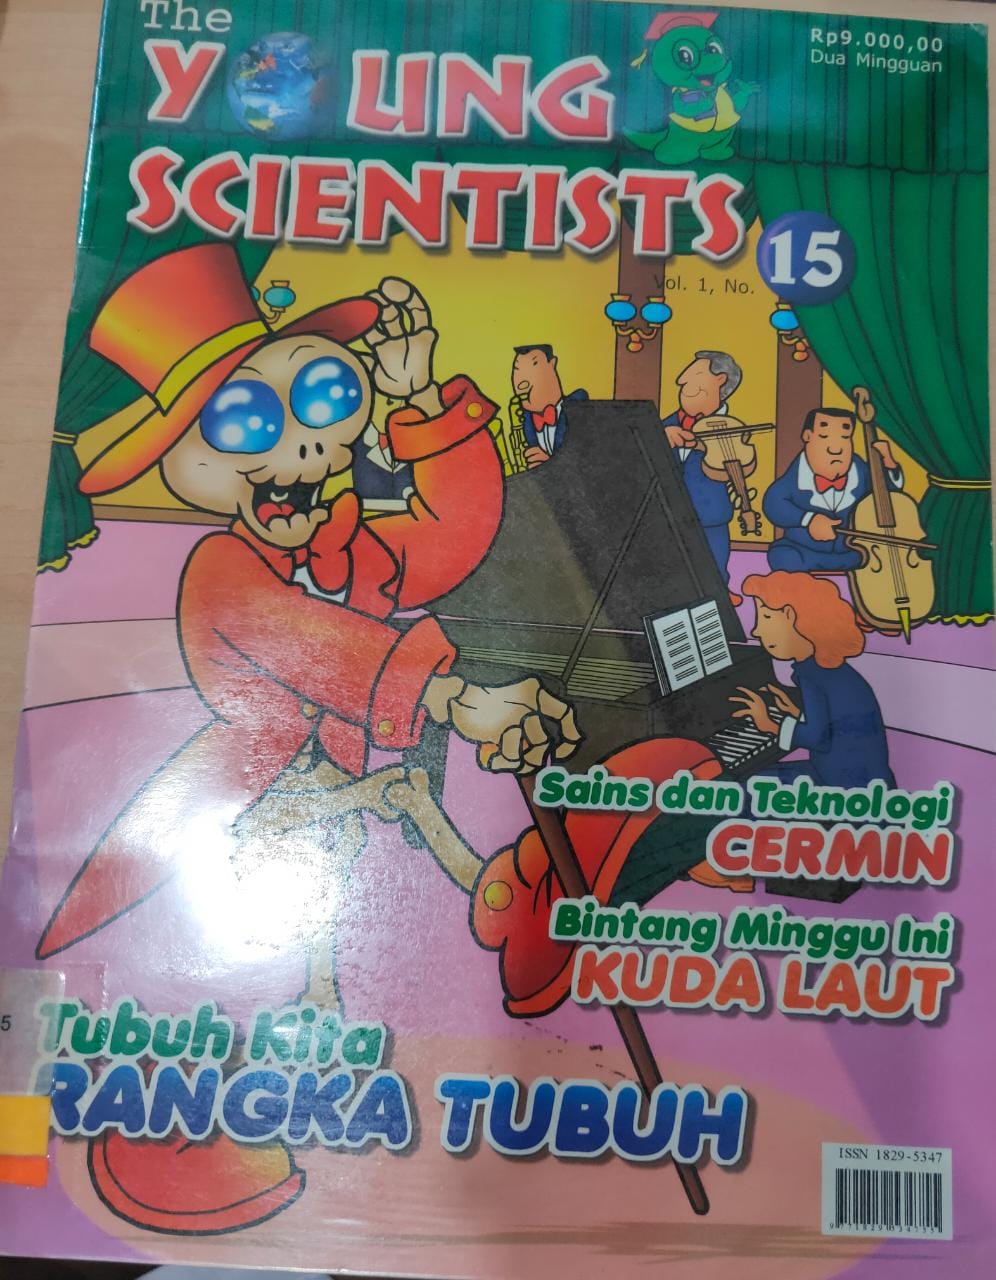 The Young Scientists Vol 1 No. 15 :  Majalah Sains Untuk Anak-Anak